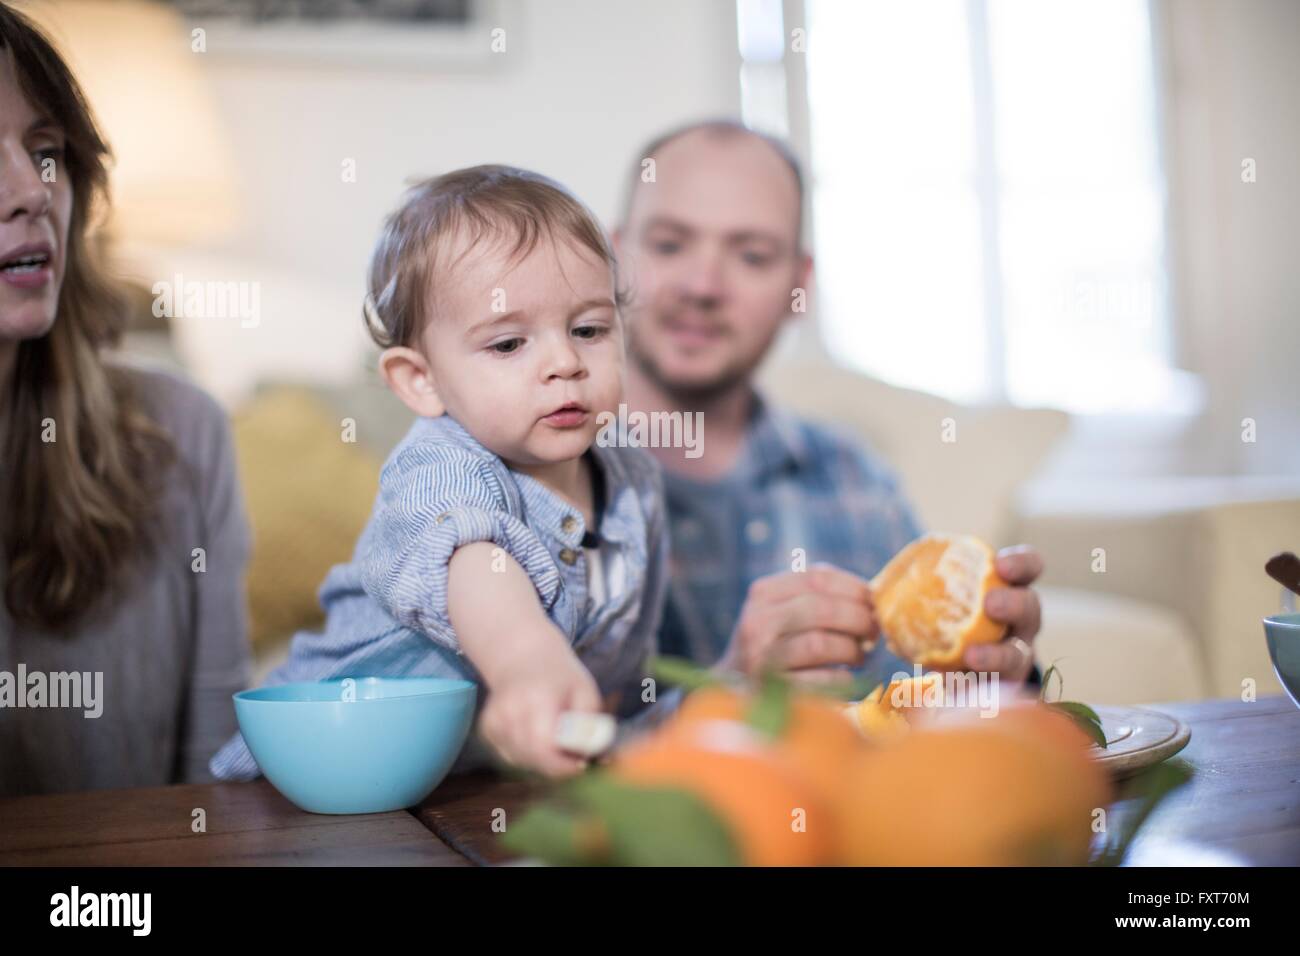 Les parents en train de déjeuner avec baby boy, peeling orange Banque D'Images